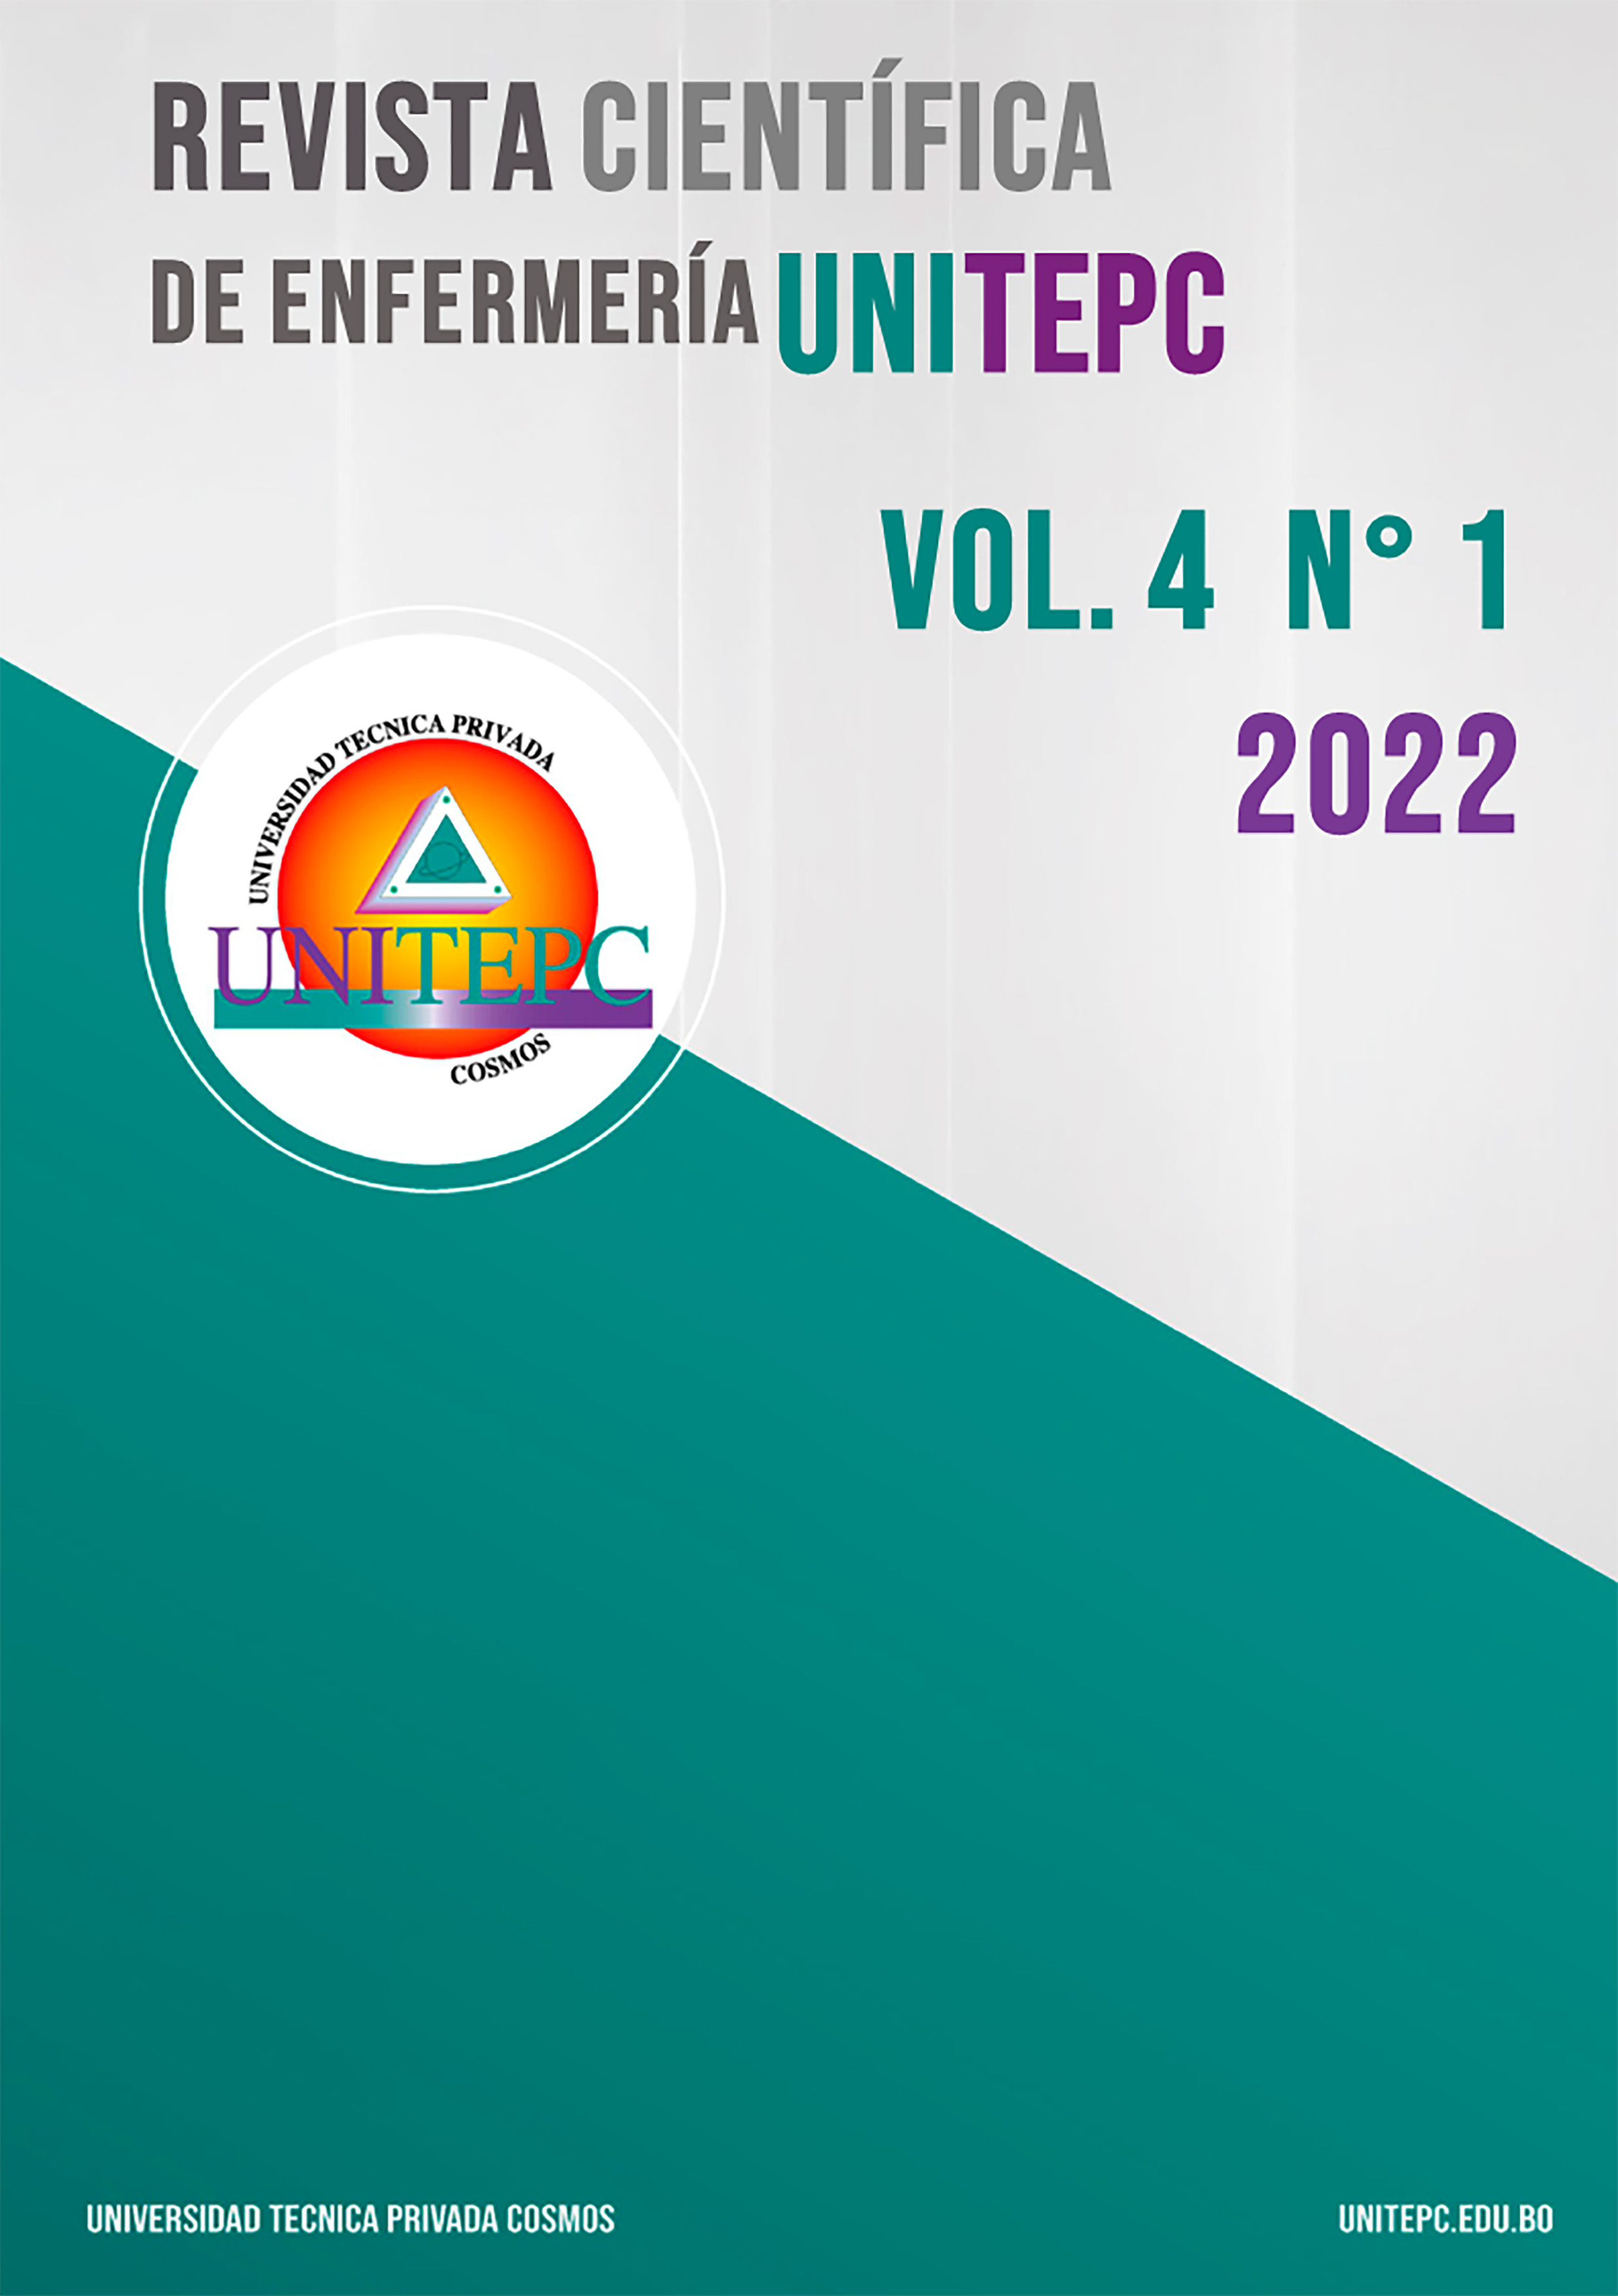 					View Vol. 4 No. 1 (2022): Revista Científica de Enfermería UNITEPC
				